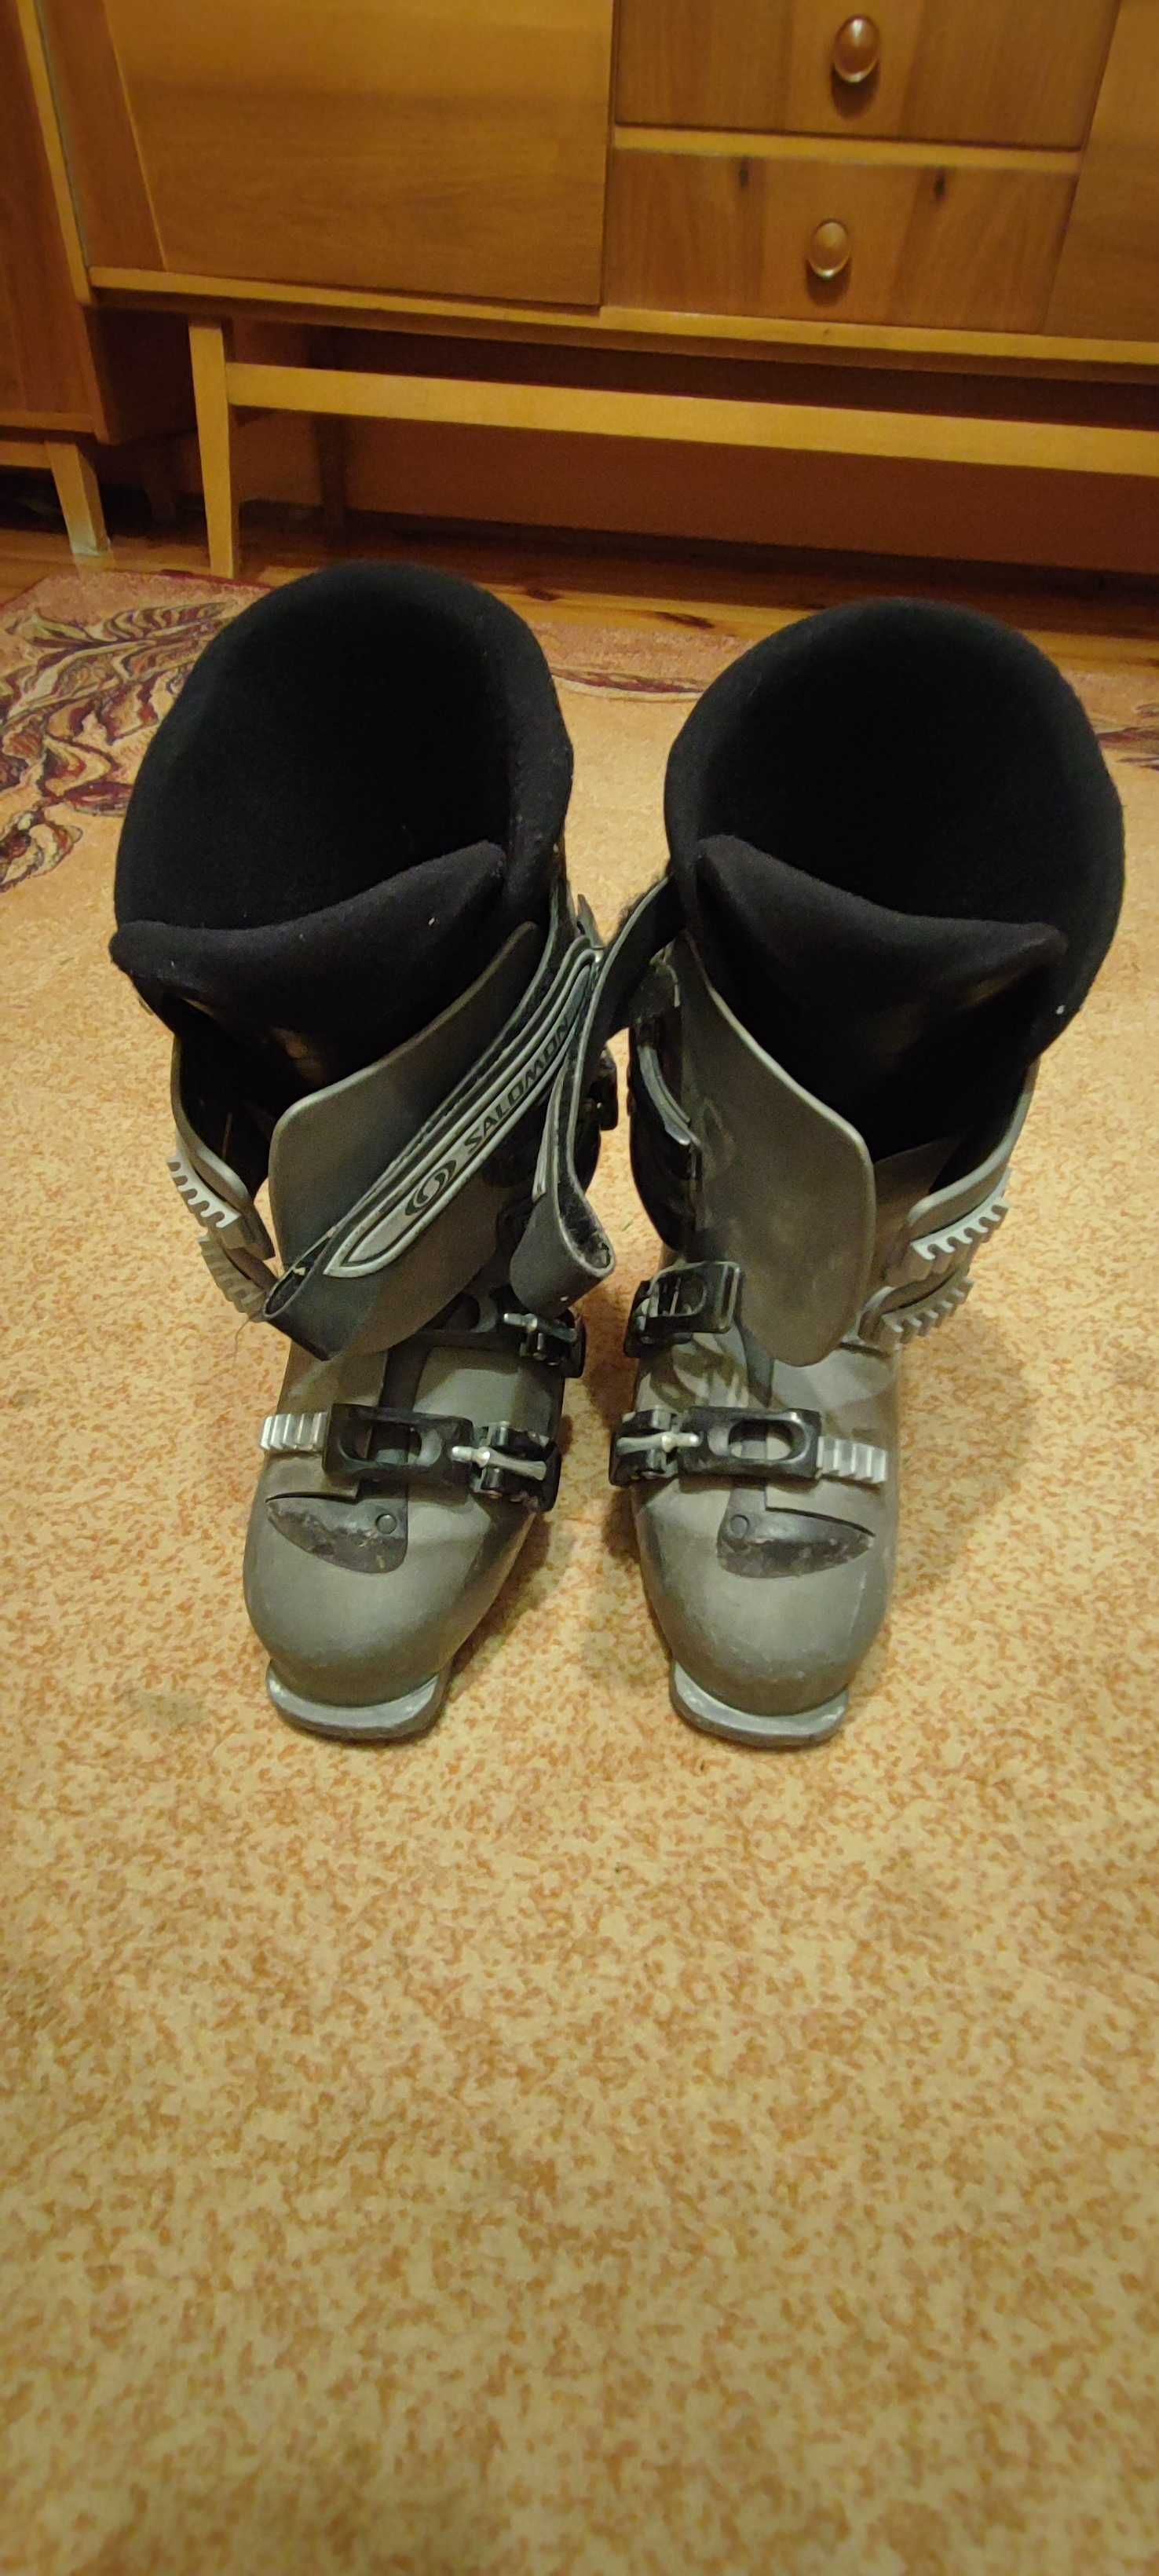 Buty narciarskie Salomon rozmiar 39